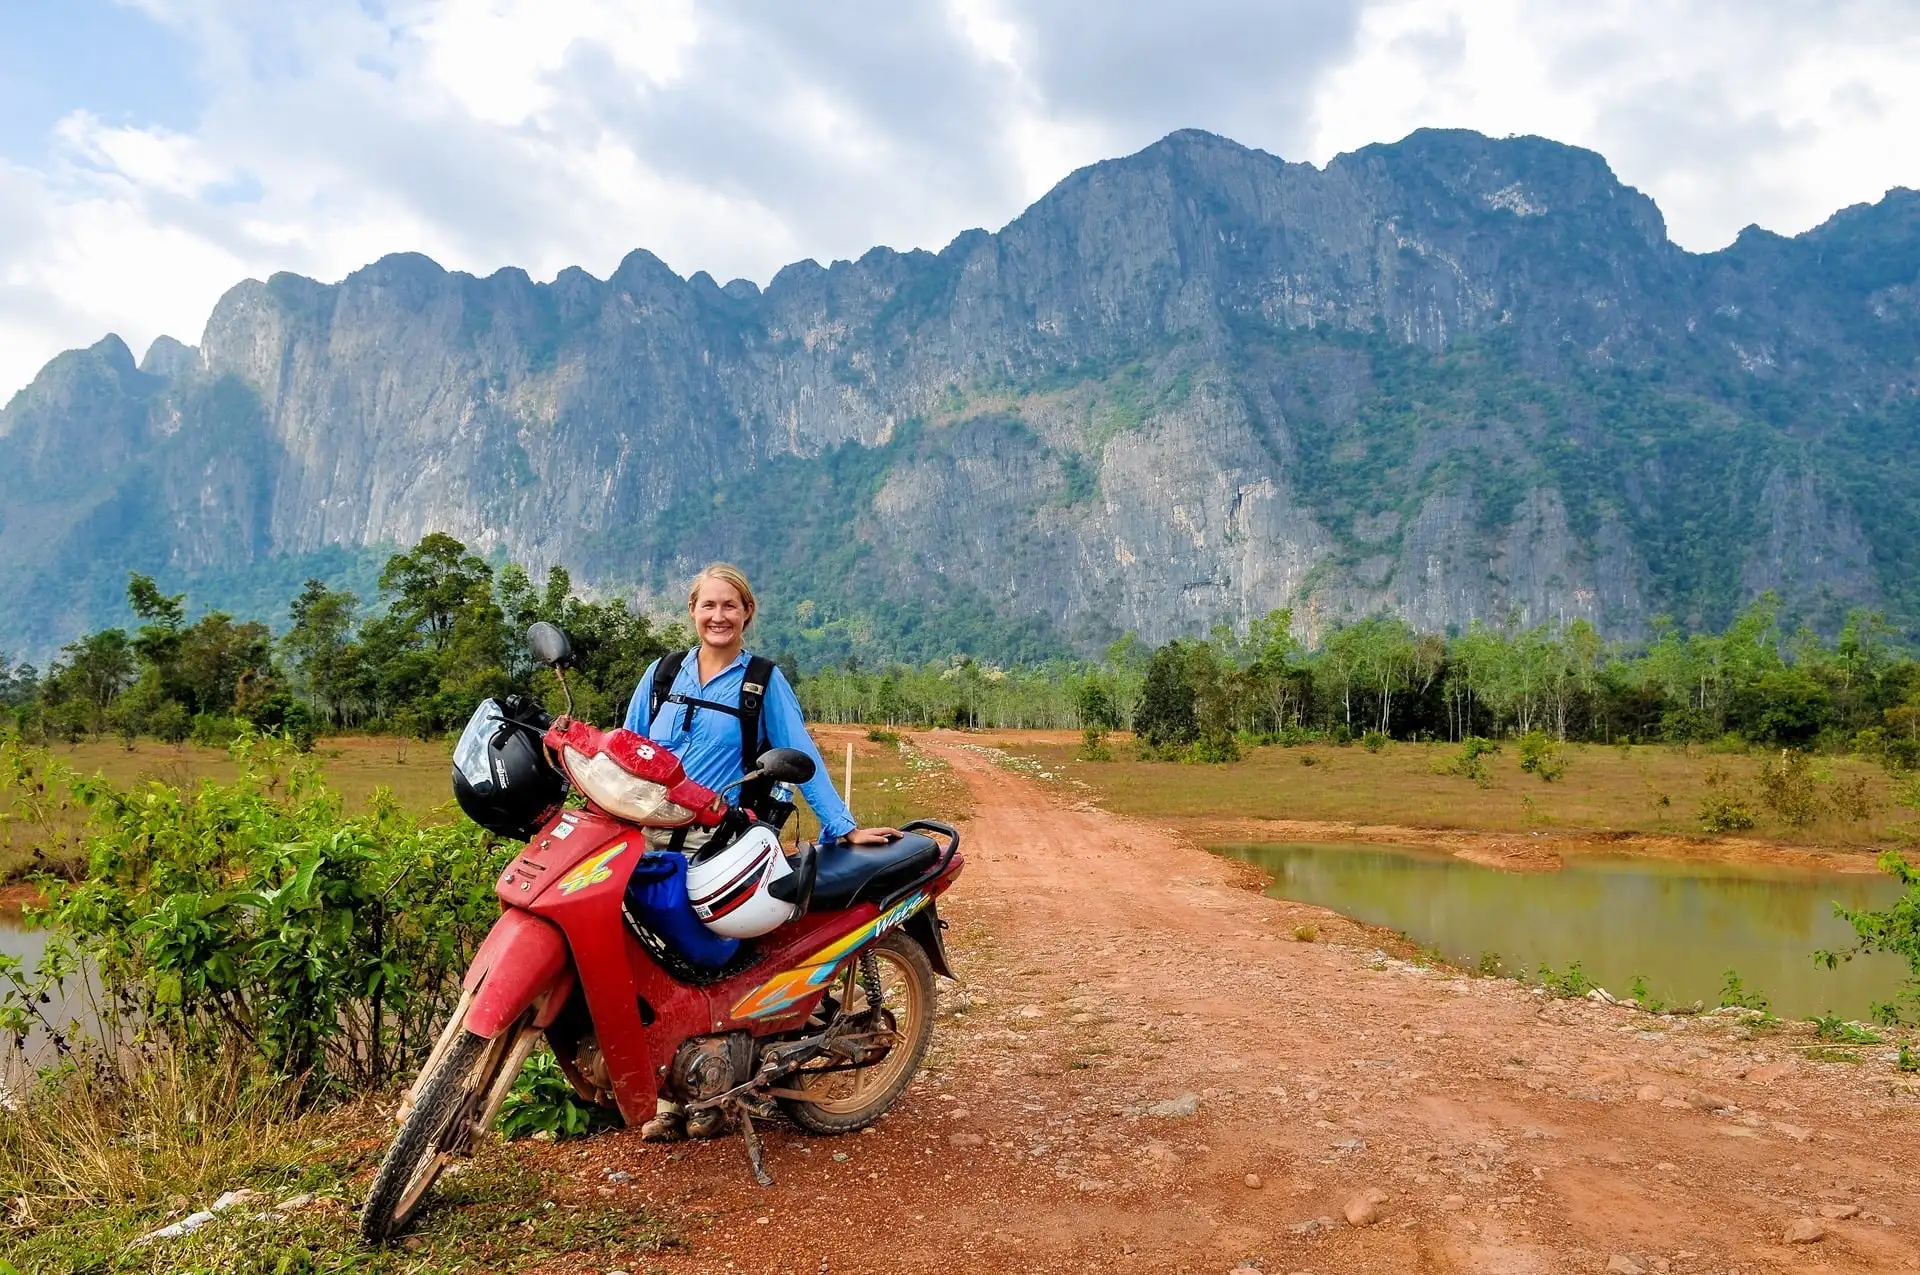 Thakhek Loop motorbiking adventure in Laos